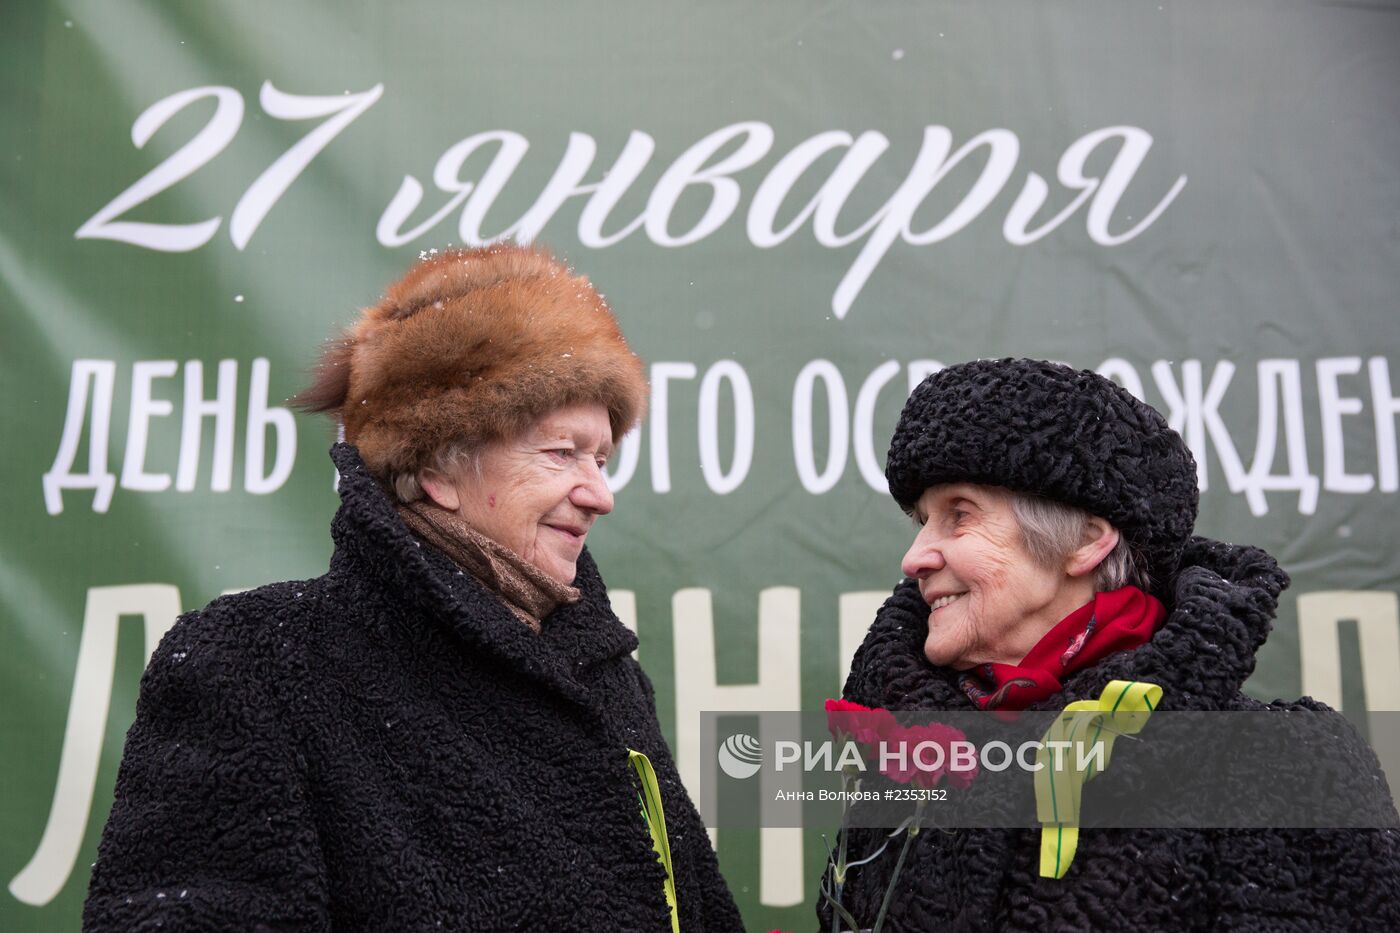 Парад, посвященный 70-летию снятия блокады Ленинграда